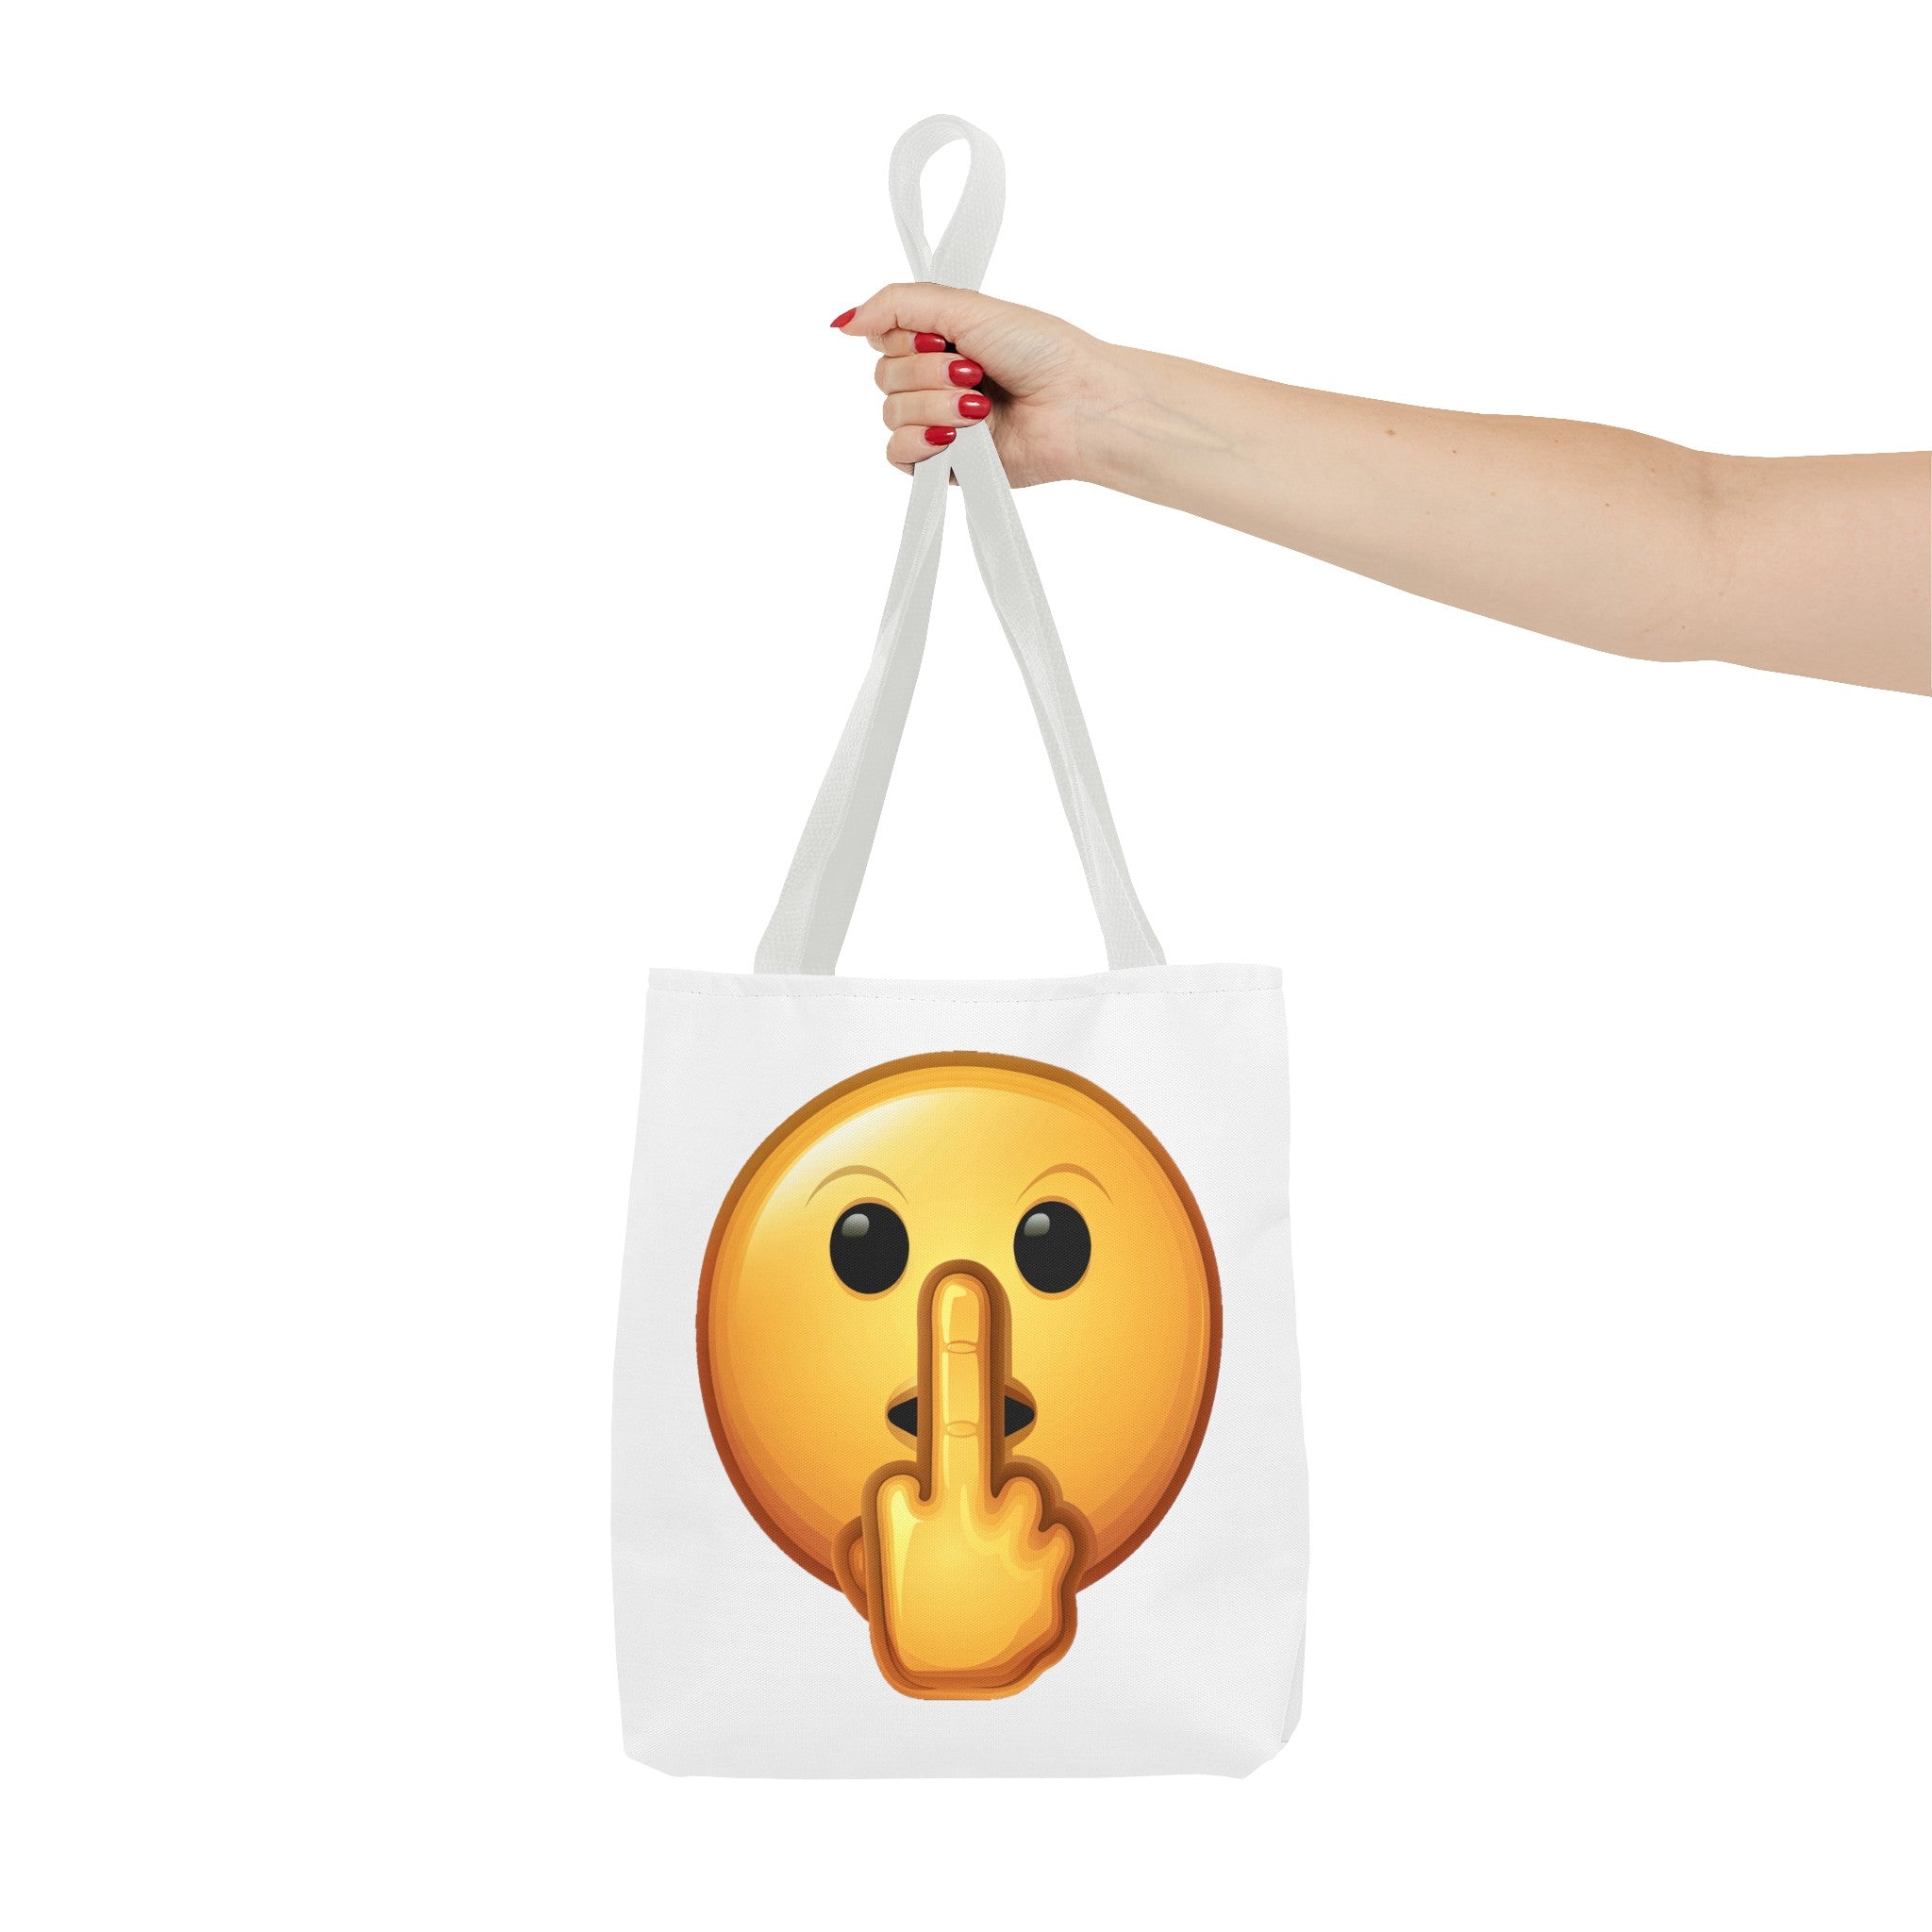 Middle Finger FU Shh Silent Protest Emoji Tote Bag (AOP)